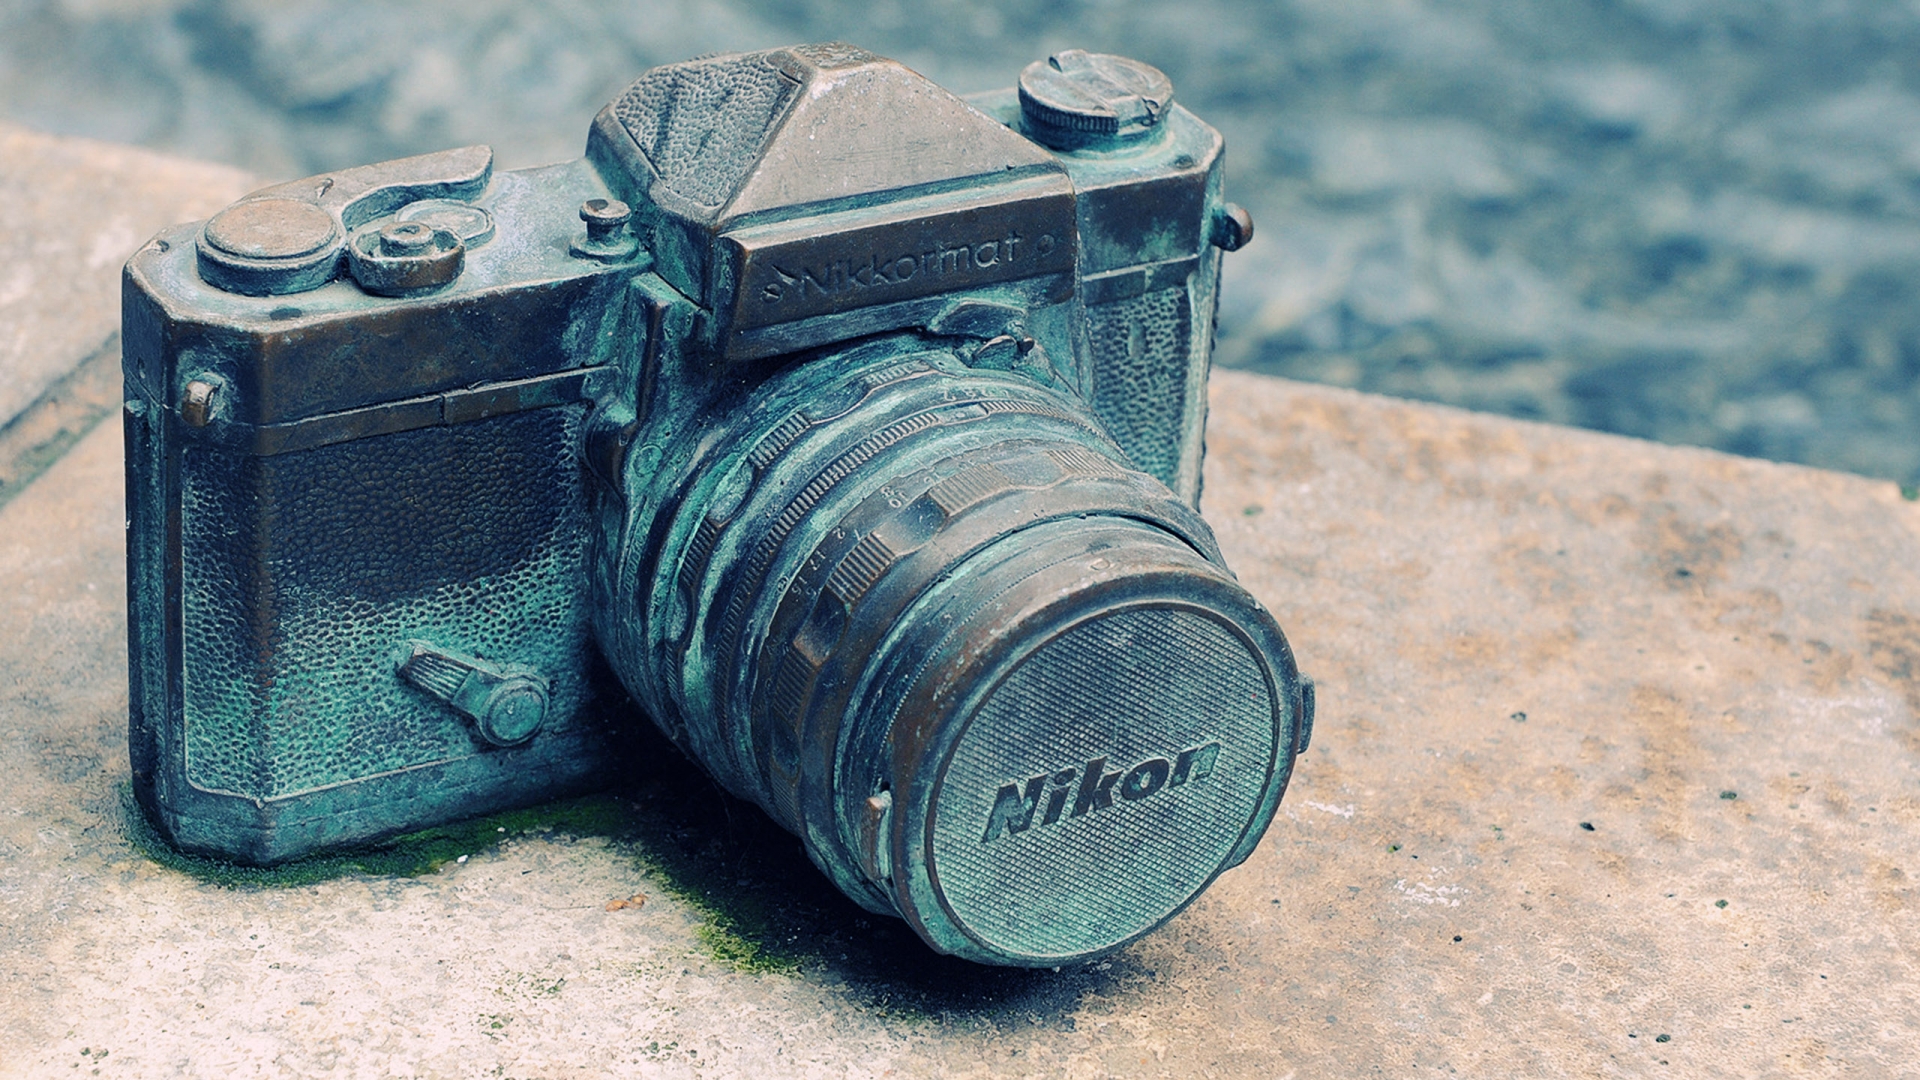 Camera Old Nikon Vintage Camera 1920x1080